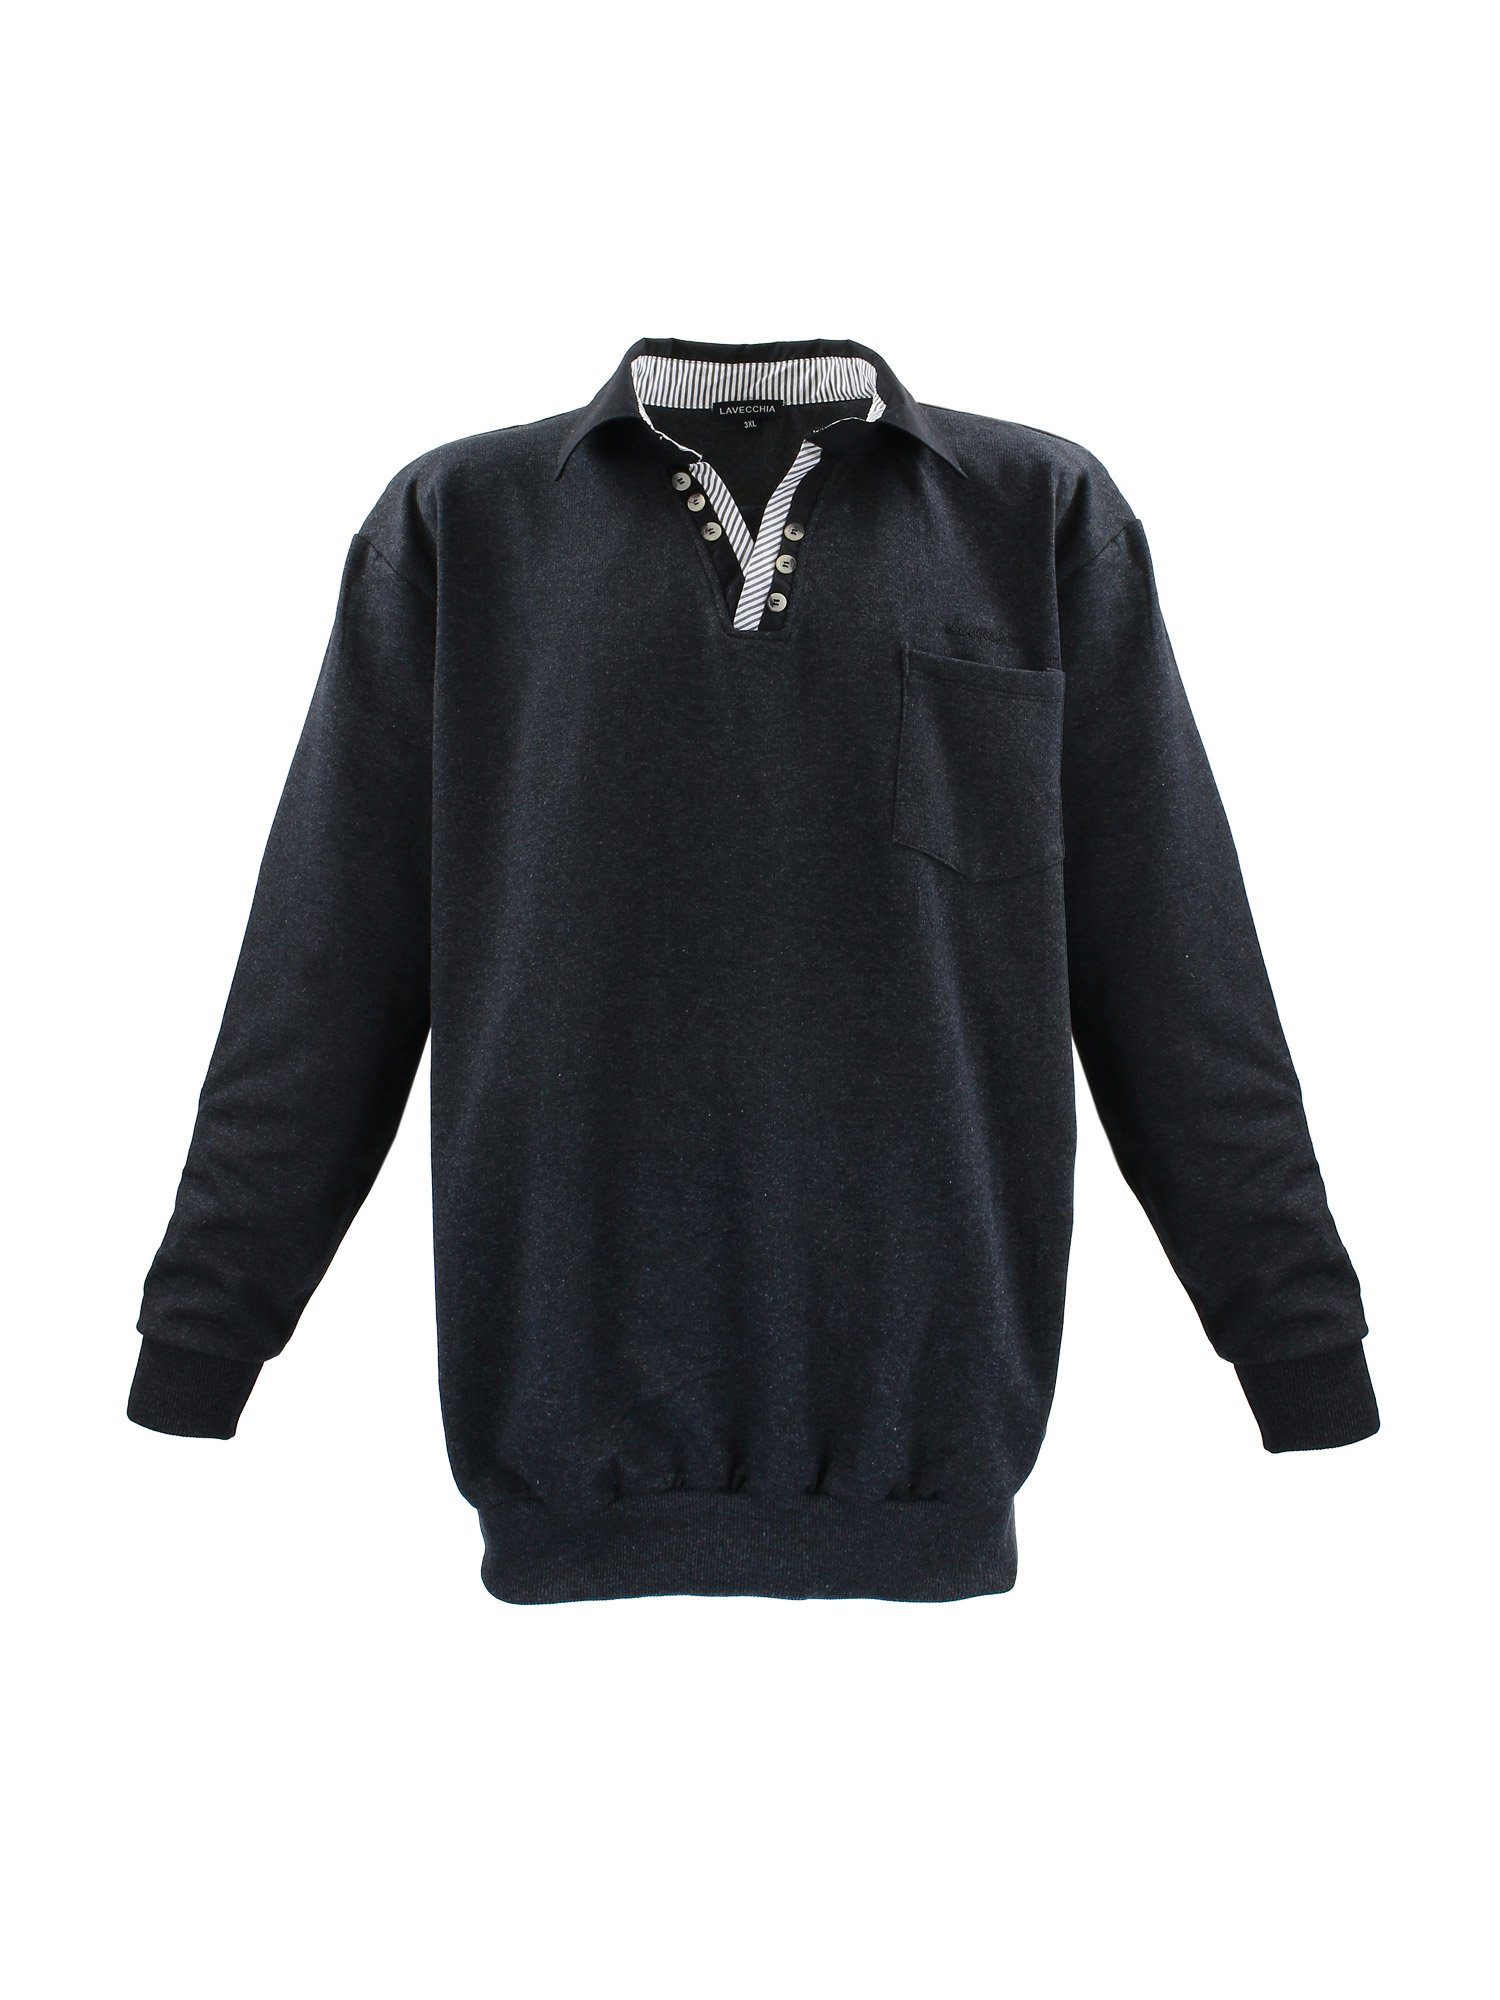 Lavecchia Sweatshirt Übergrößen Sweater LV-602 Polo Langarmshirt